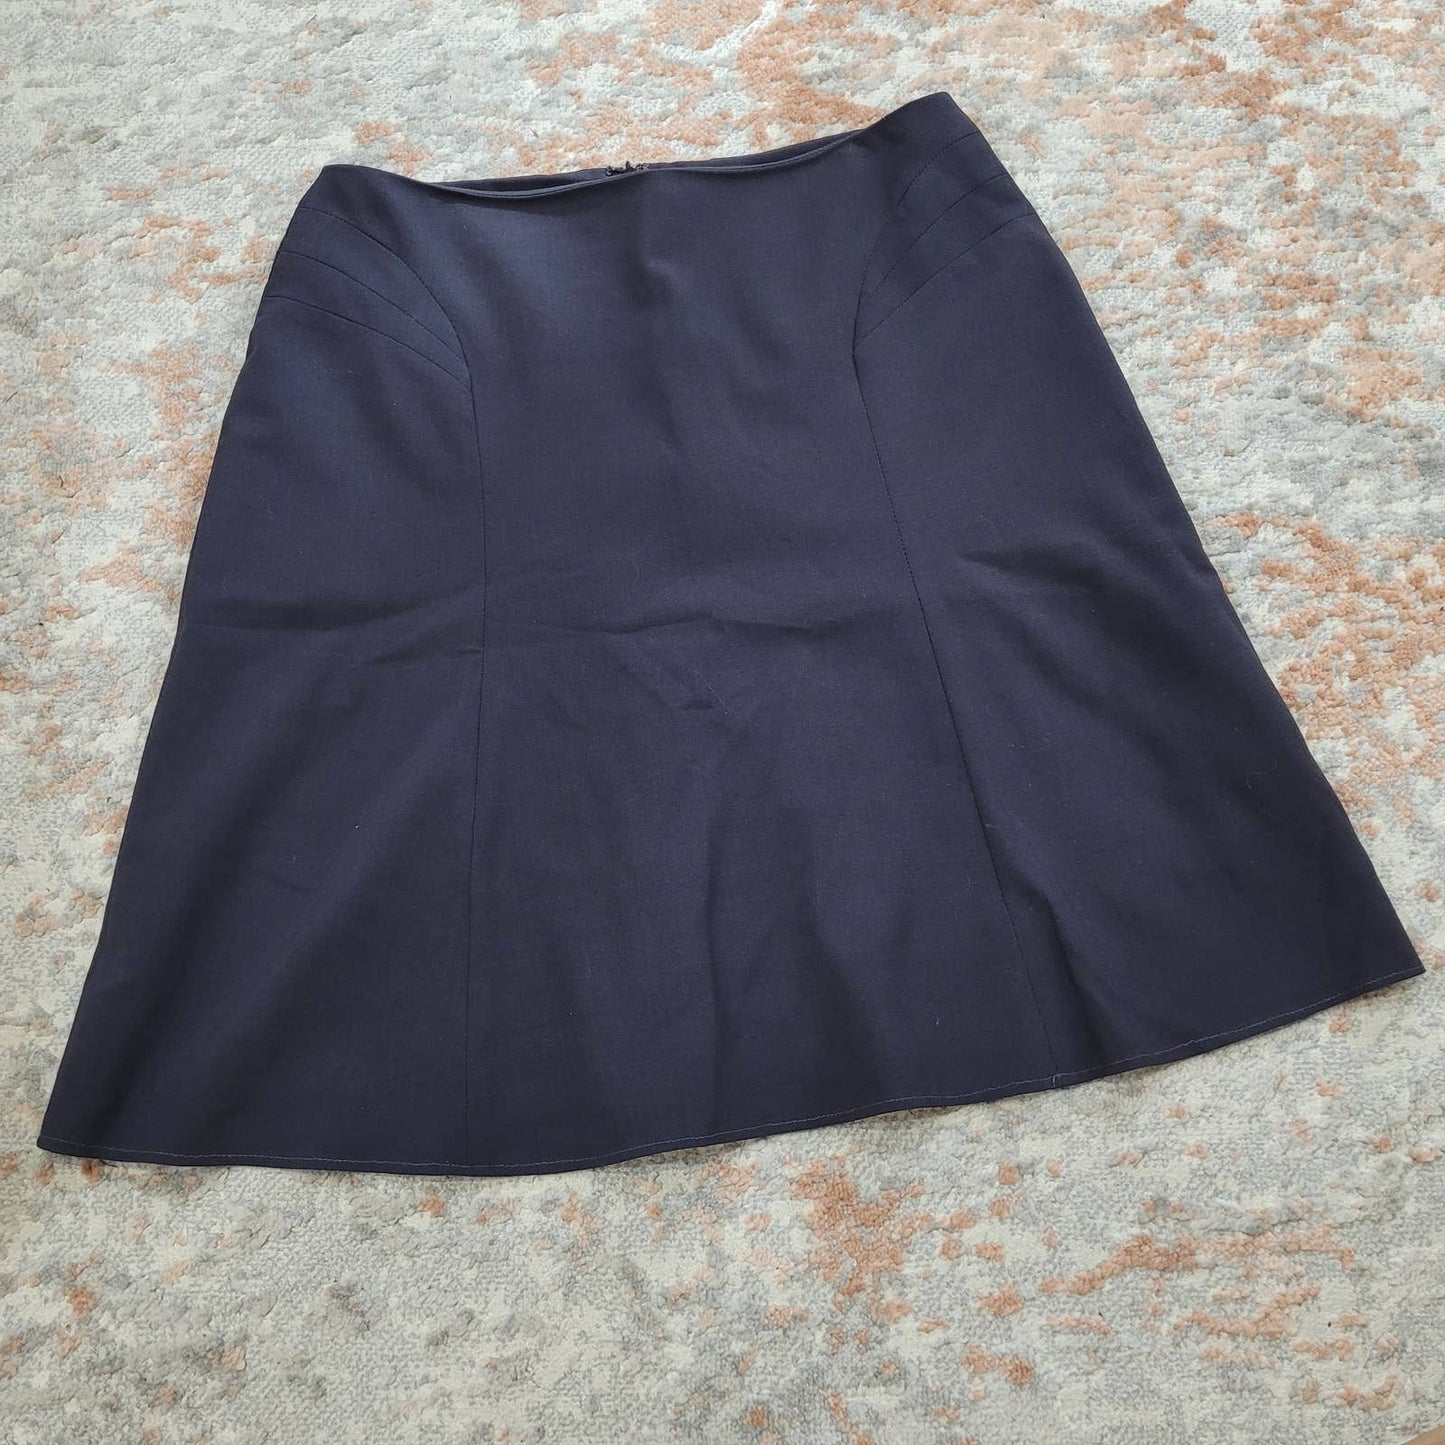 Sandra Angelozzi Wool Blend Skirt - Size 12